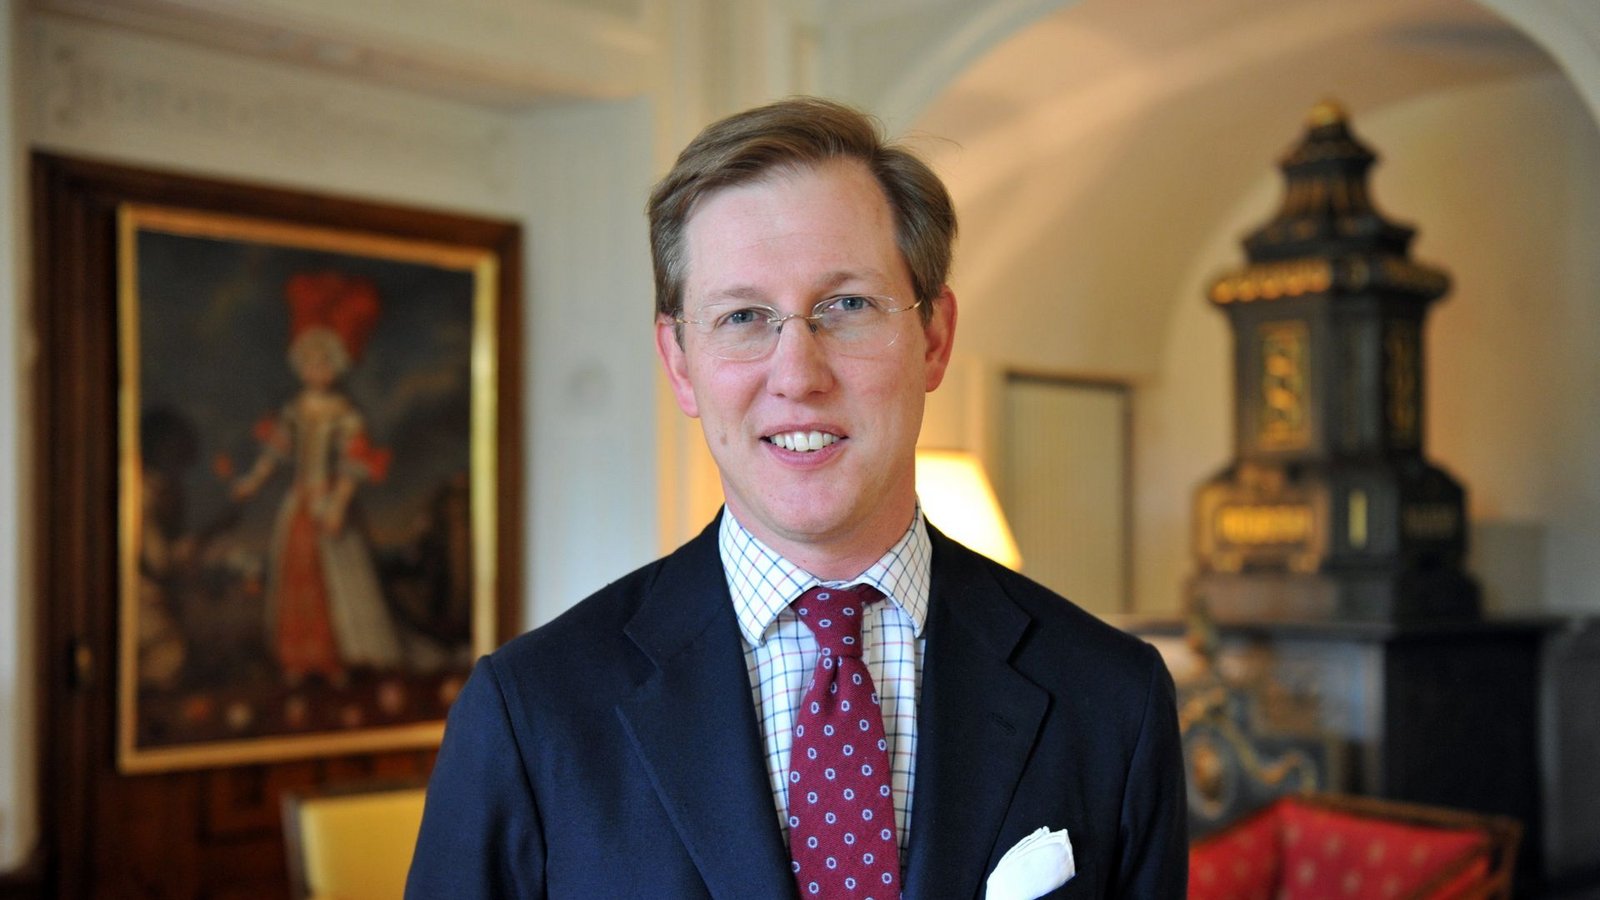 Hochadel verpflichtet: Prinz Bernhard ist ein Großcousin der britischen Prinzen William und Harry.Foto: dpa